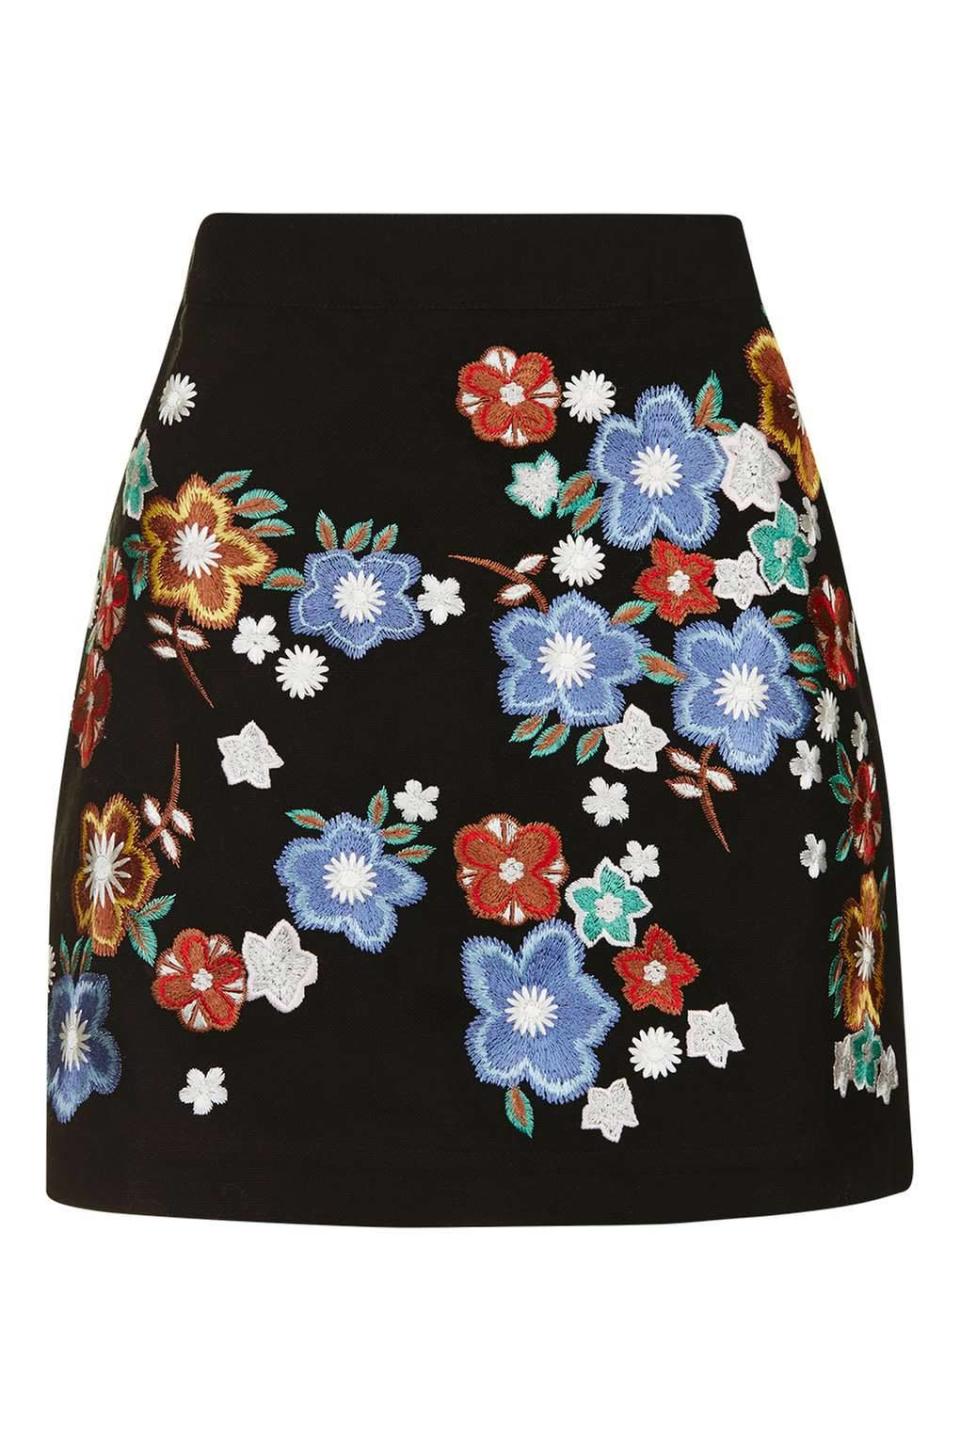 70s Skirt